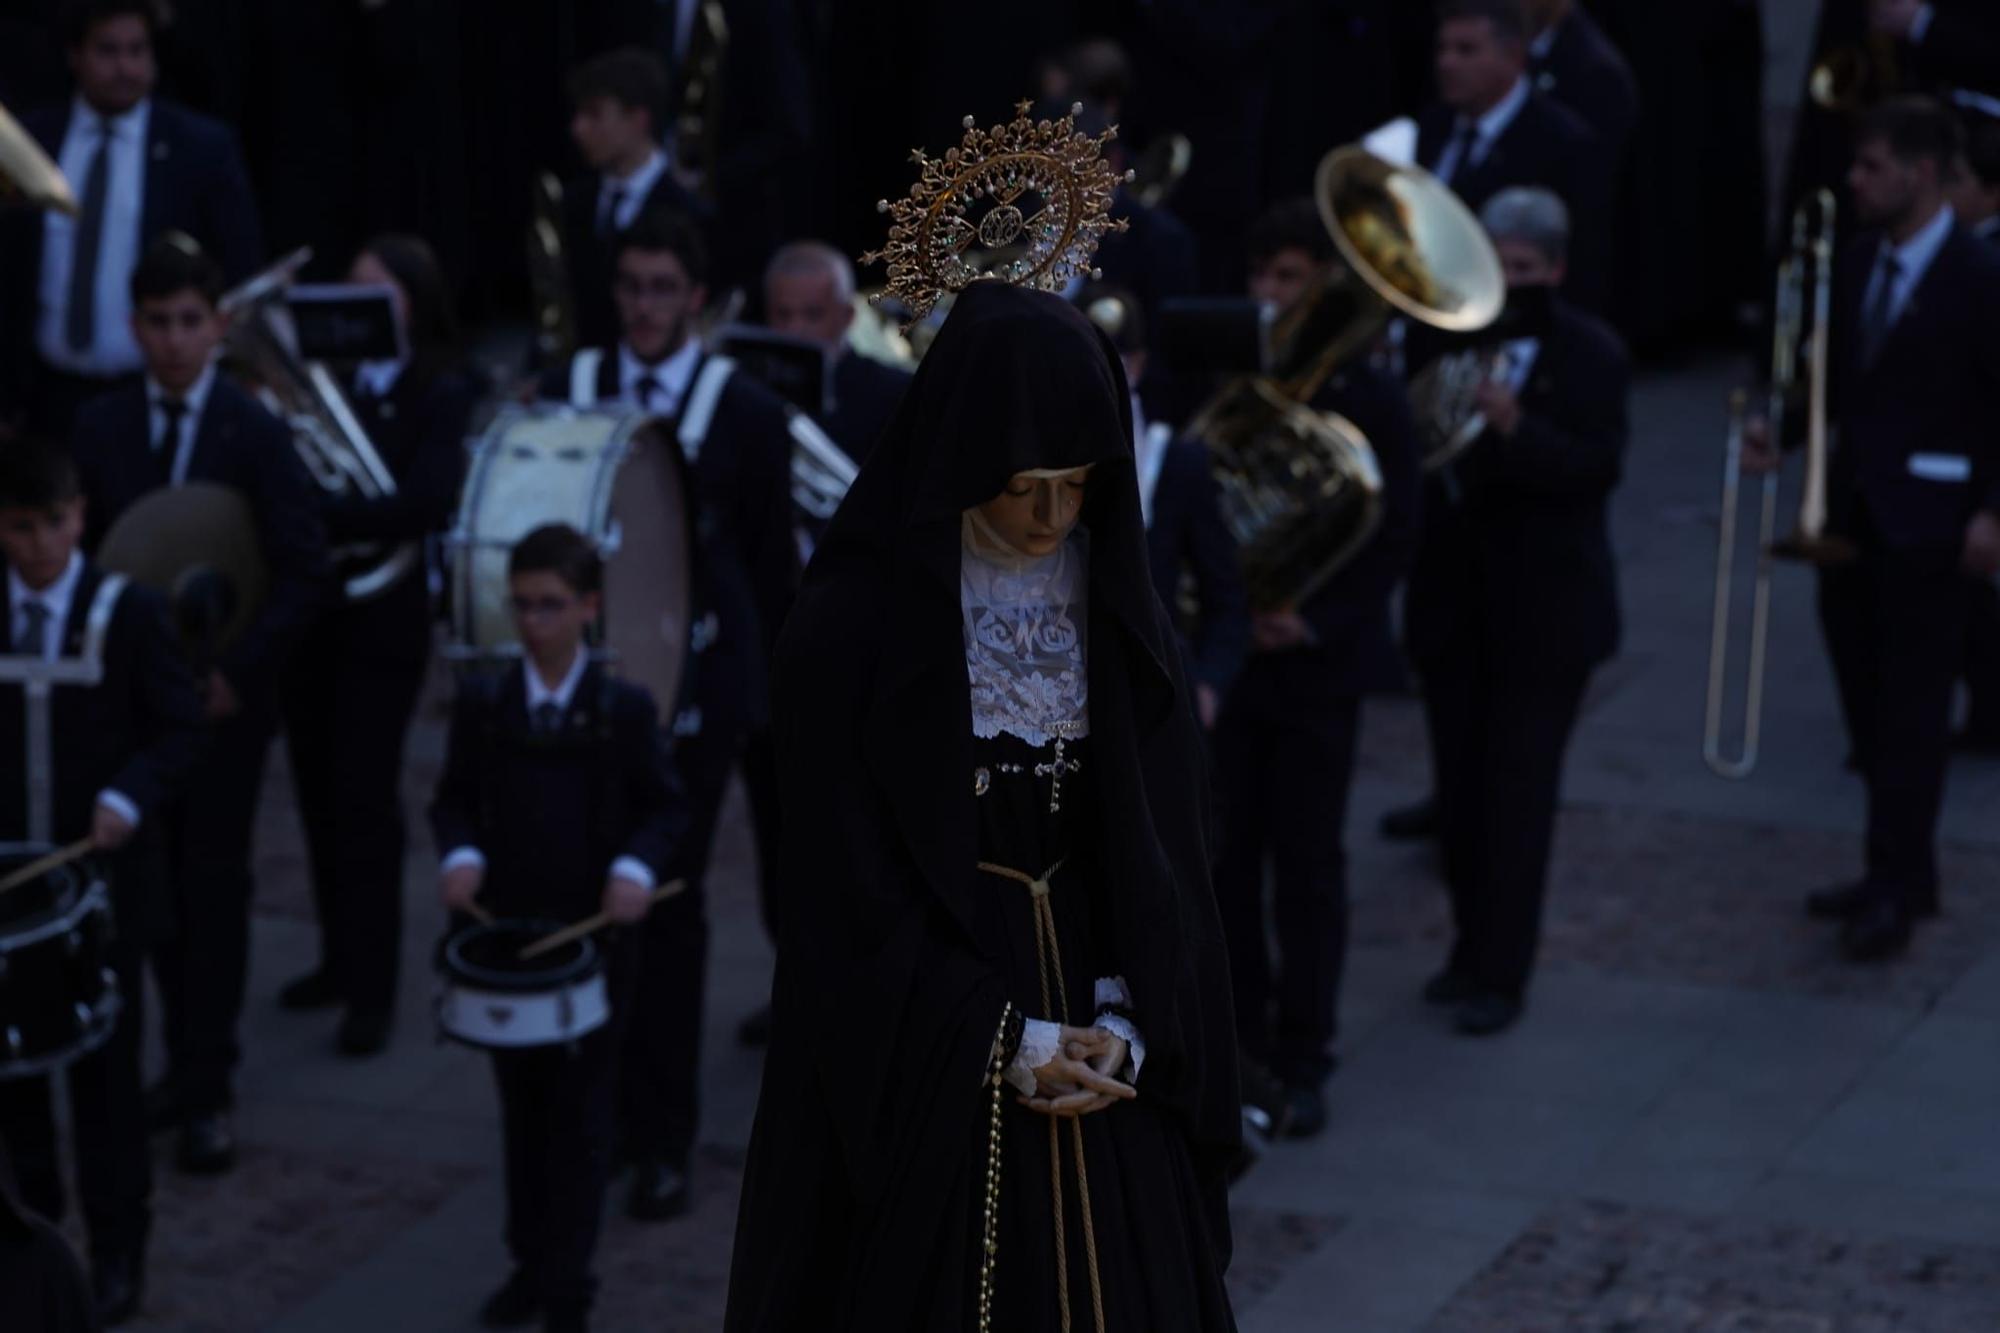 GALERÍA | La procesión de la Soledad, en imágenes